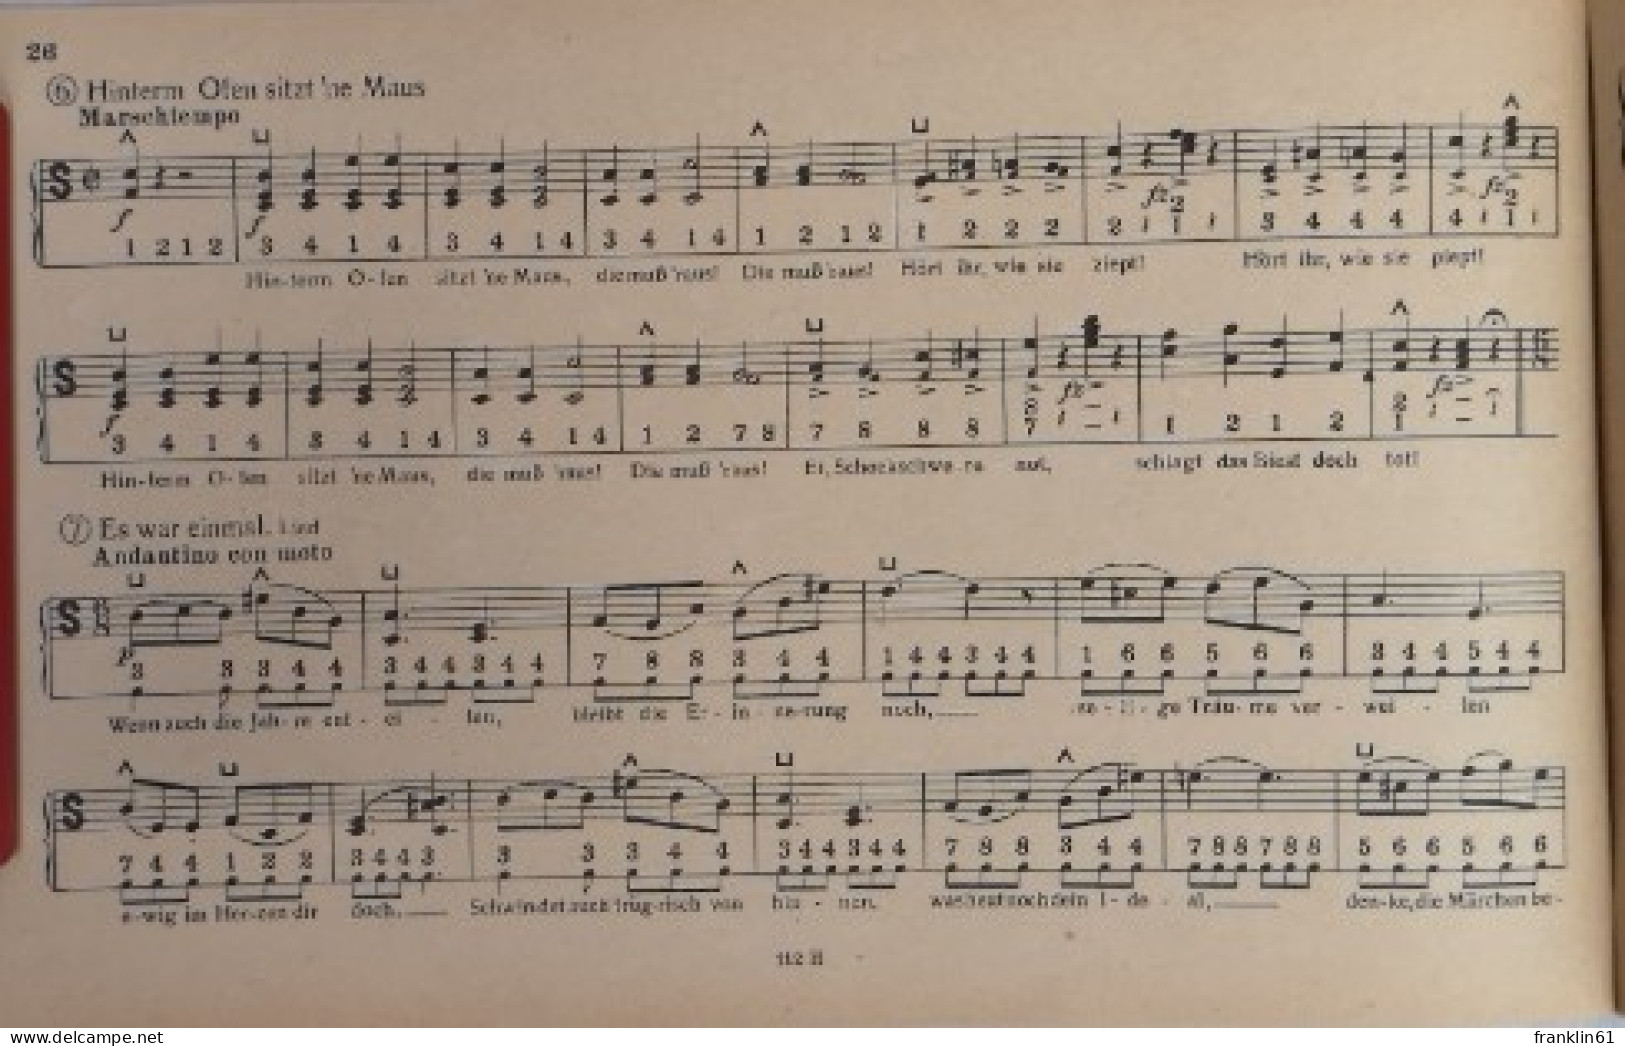 Paul Lincke. Melodien Für Handharmonika. - Musique